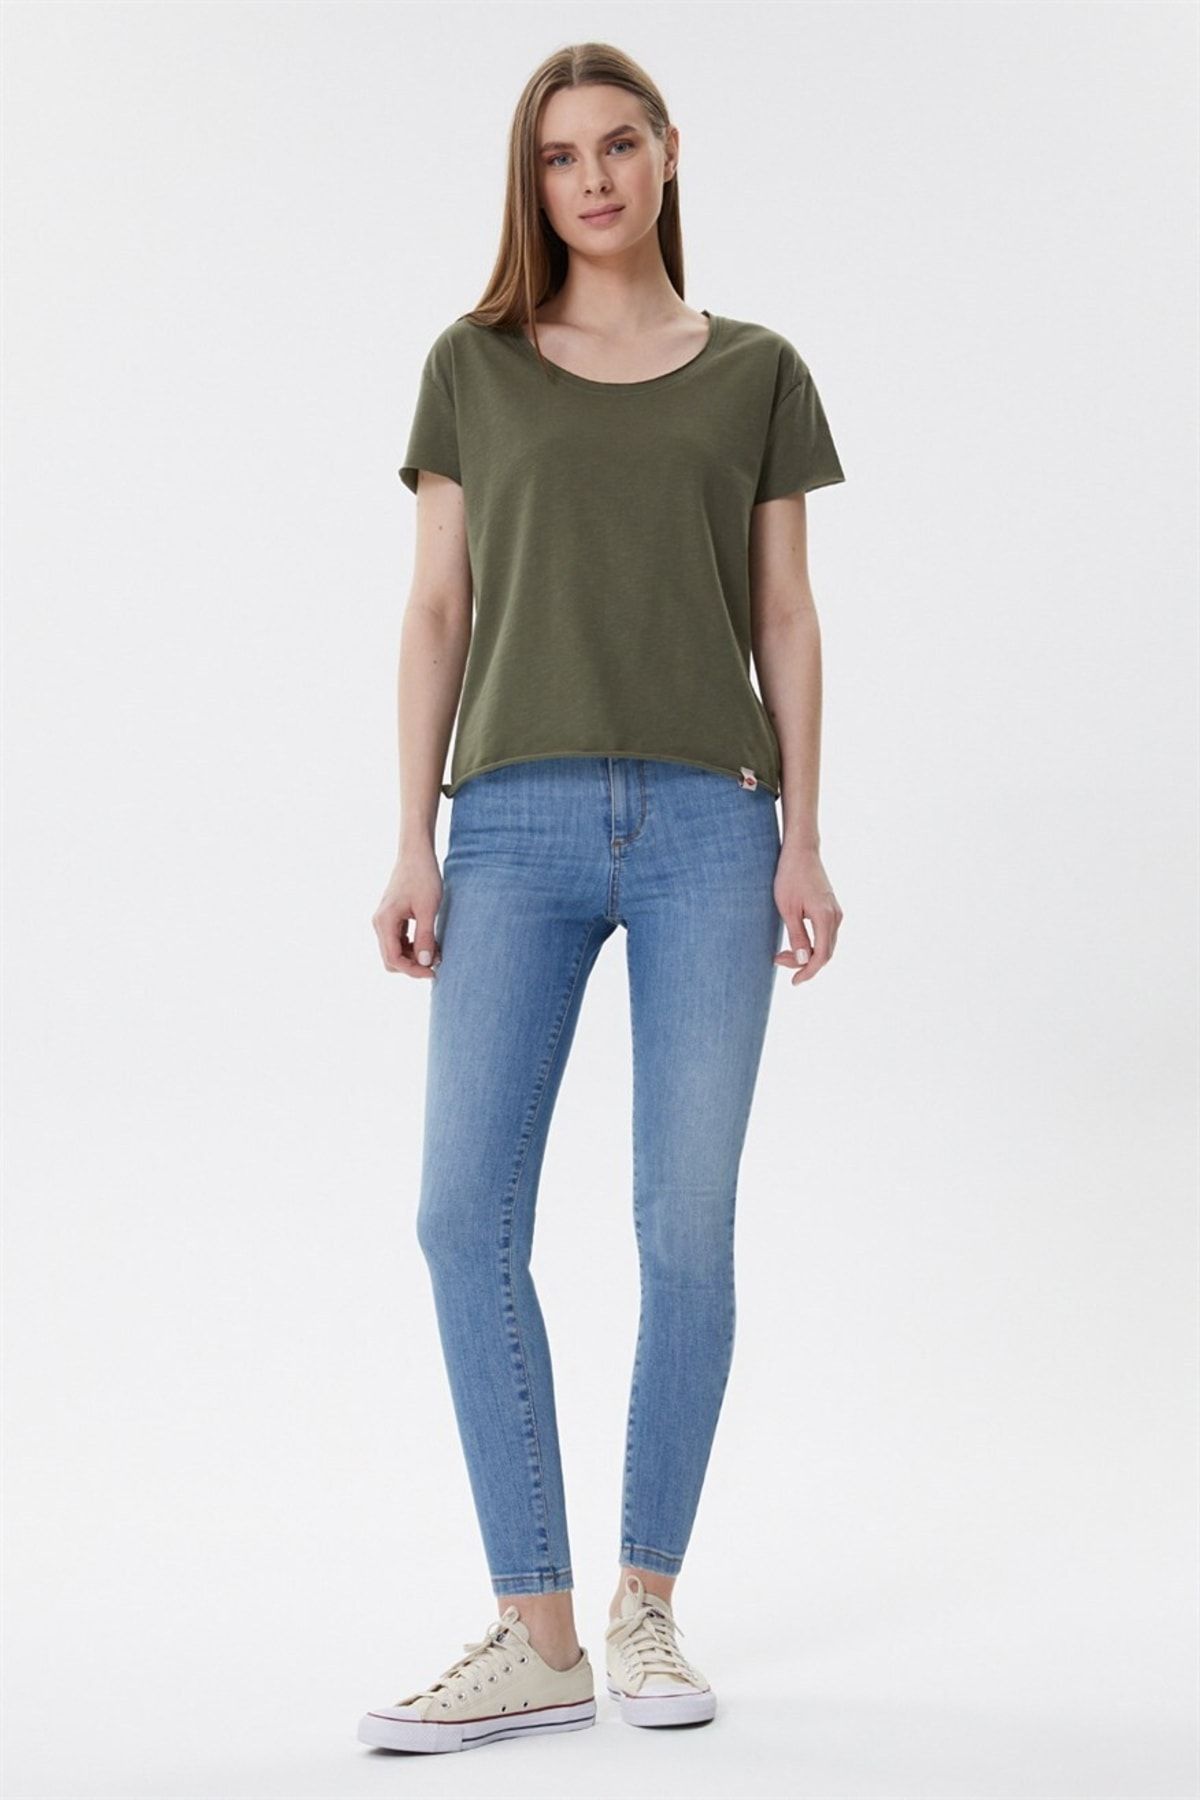 Lee Cooper Originals Distressed Slim Fit Annie Stretch Jeans Womens 28  Indigo | eBay